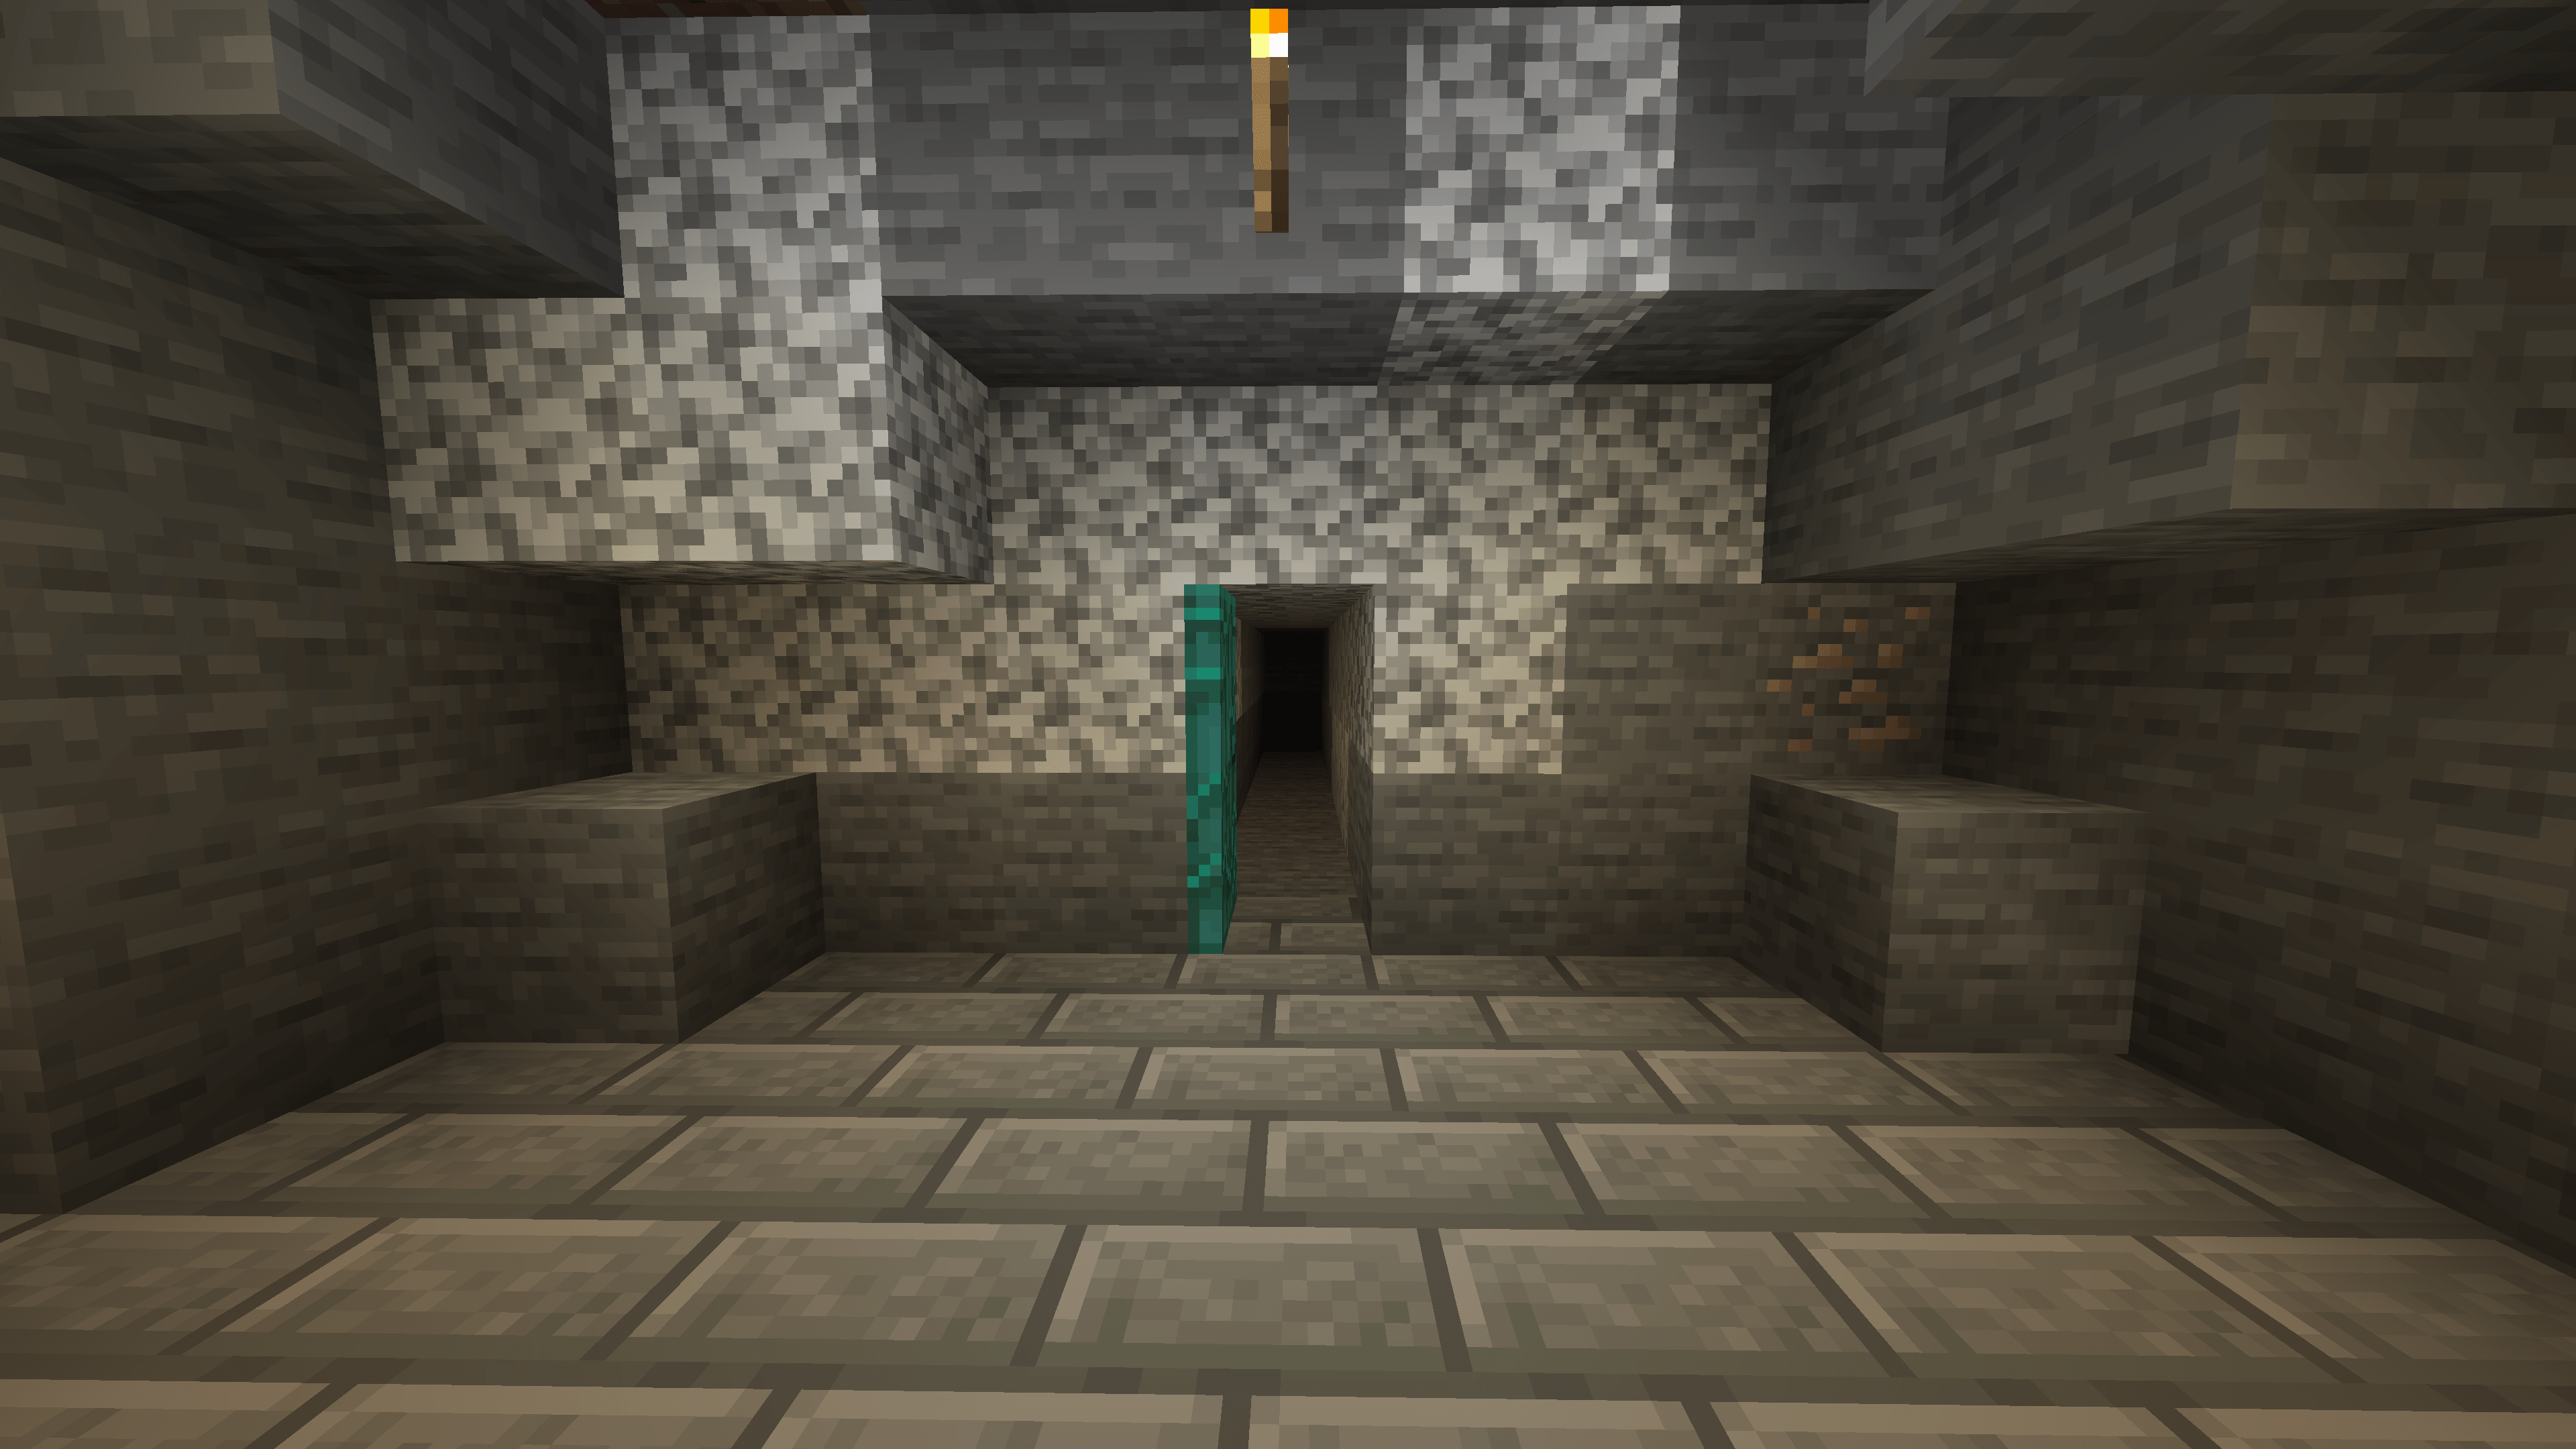 Questa galleria è quella in cui scaveremo per trovare i diamanti su Minecraft. Qua sotto descrivo cosa intendo.